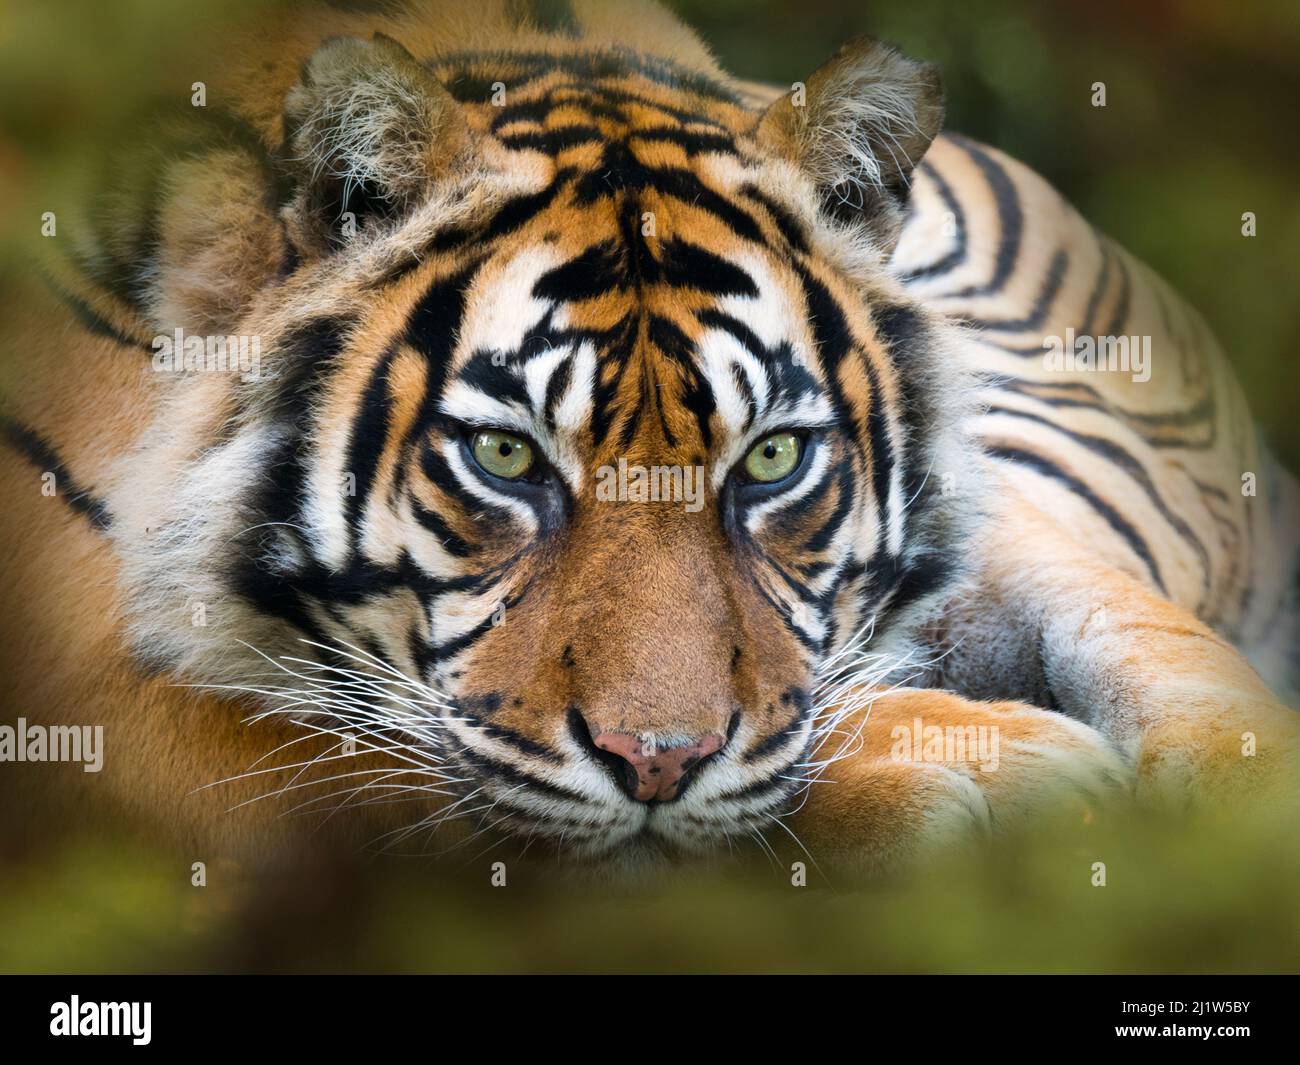 Tiger Sumatran (Panthera tigris sondaica). Captive, con motivo a lamelle aggiunto digitalmente. Foto Stock